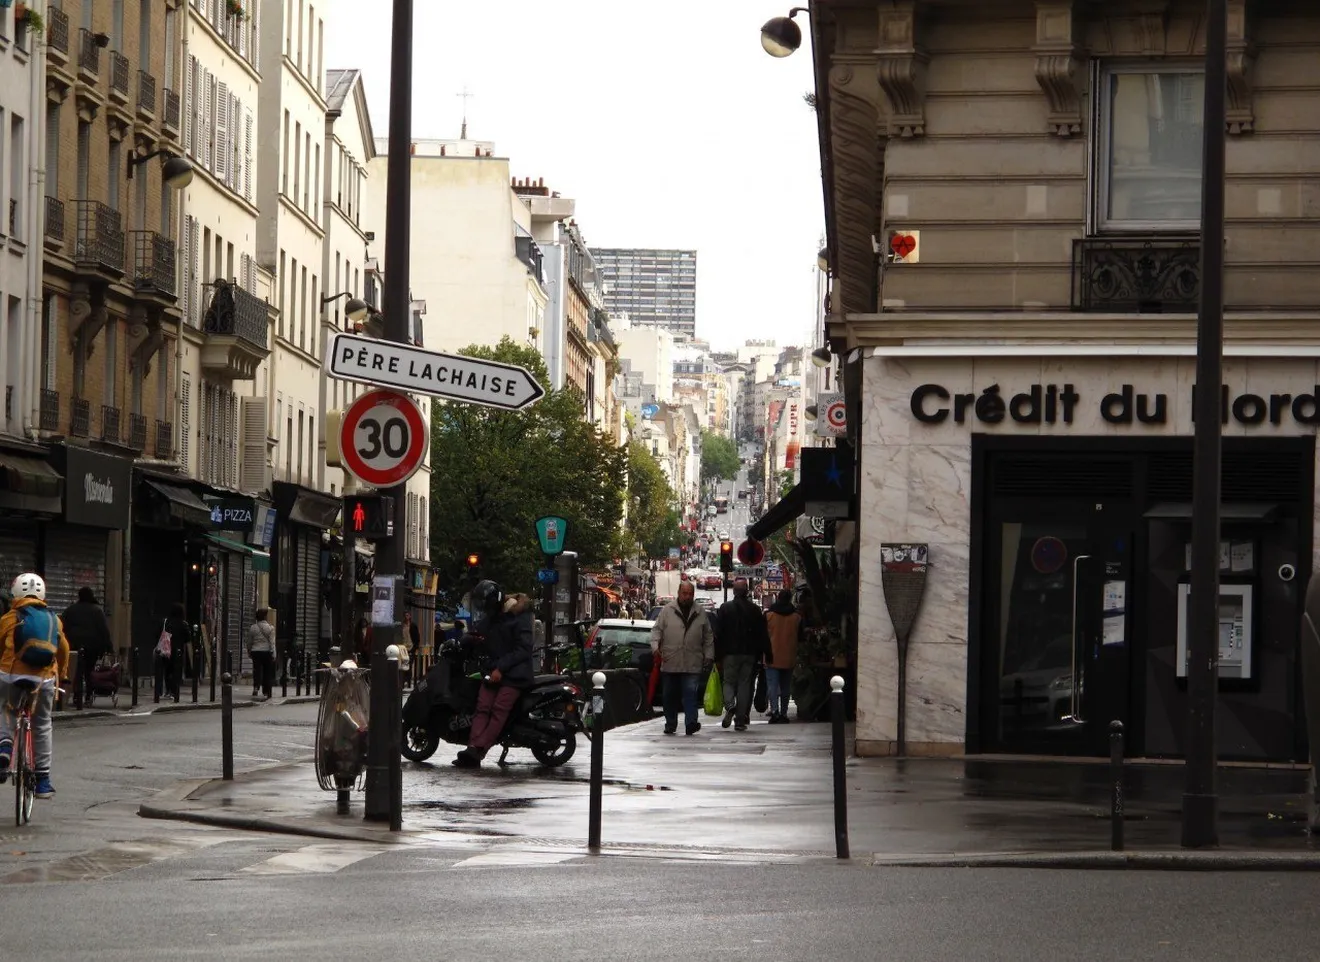 París limita casi todas sus calles a 30 km/h (y con apoyo popular)